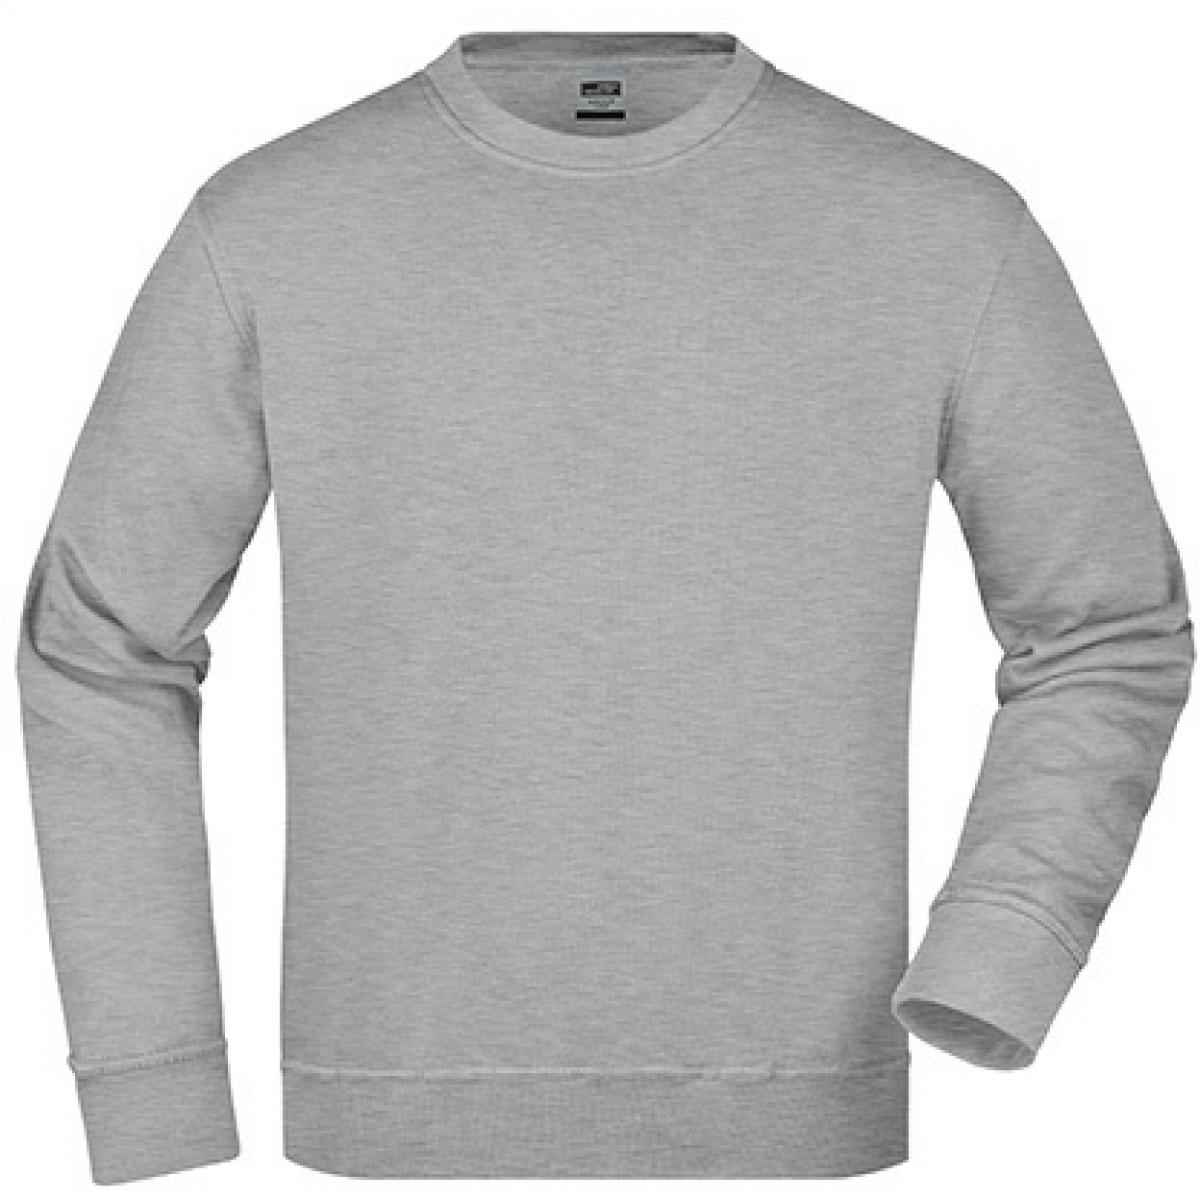 Hersteller: James+Nicholson Herstellernummer: JN840 Artikelbezeichnung: Workwear Sweatshirt / Waschbar bis 60C Farbe: Grey Heather